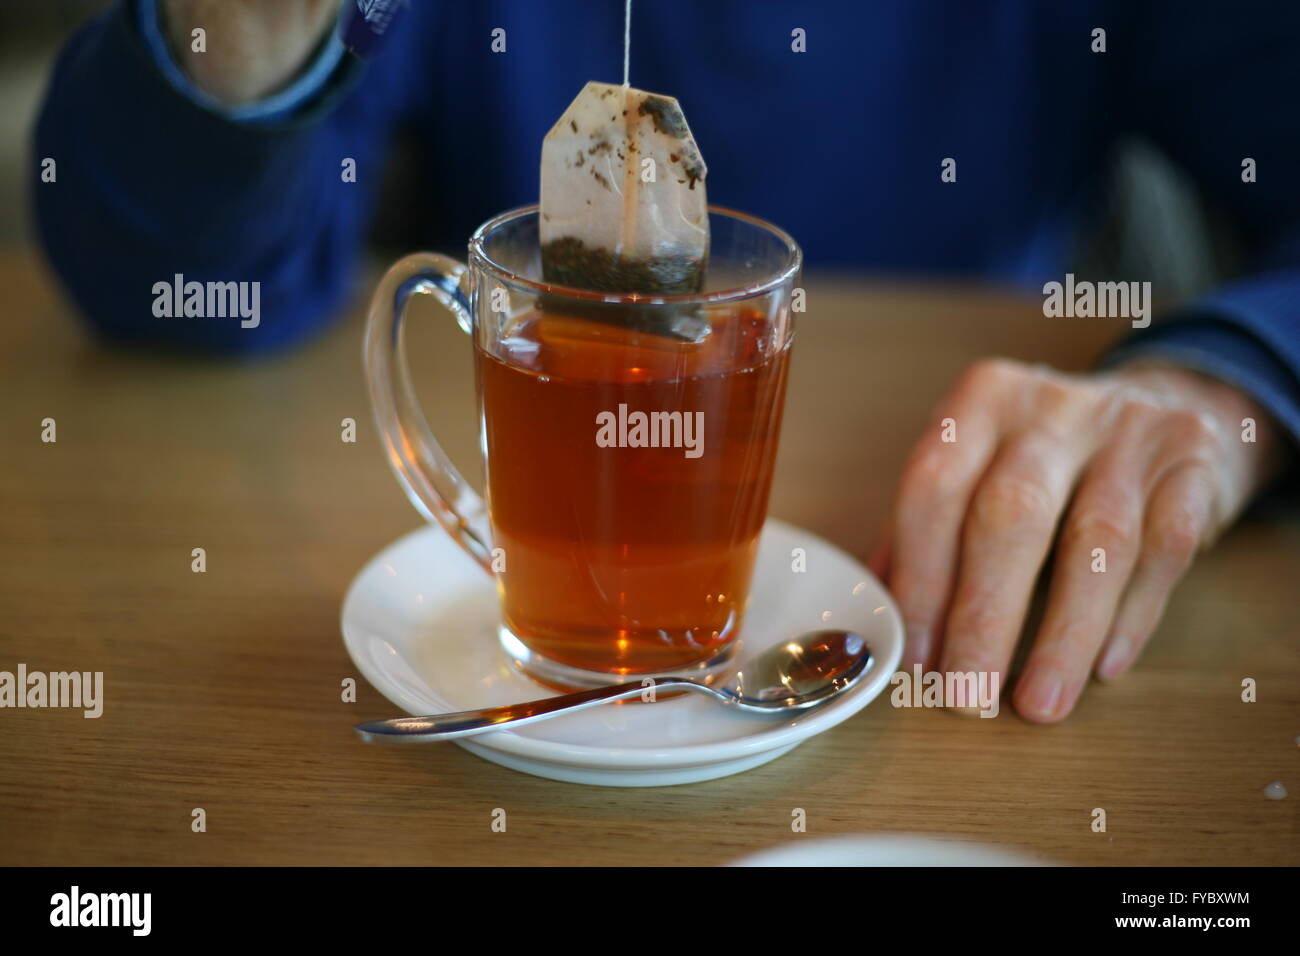 Bild von einem Mann, der trinkt eine Tasse Tee, Bonn, Deutschland Stockfoto